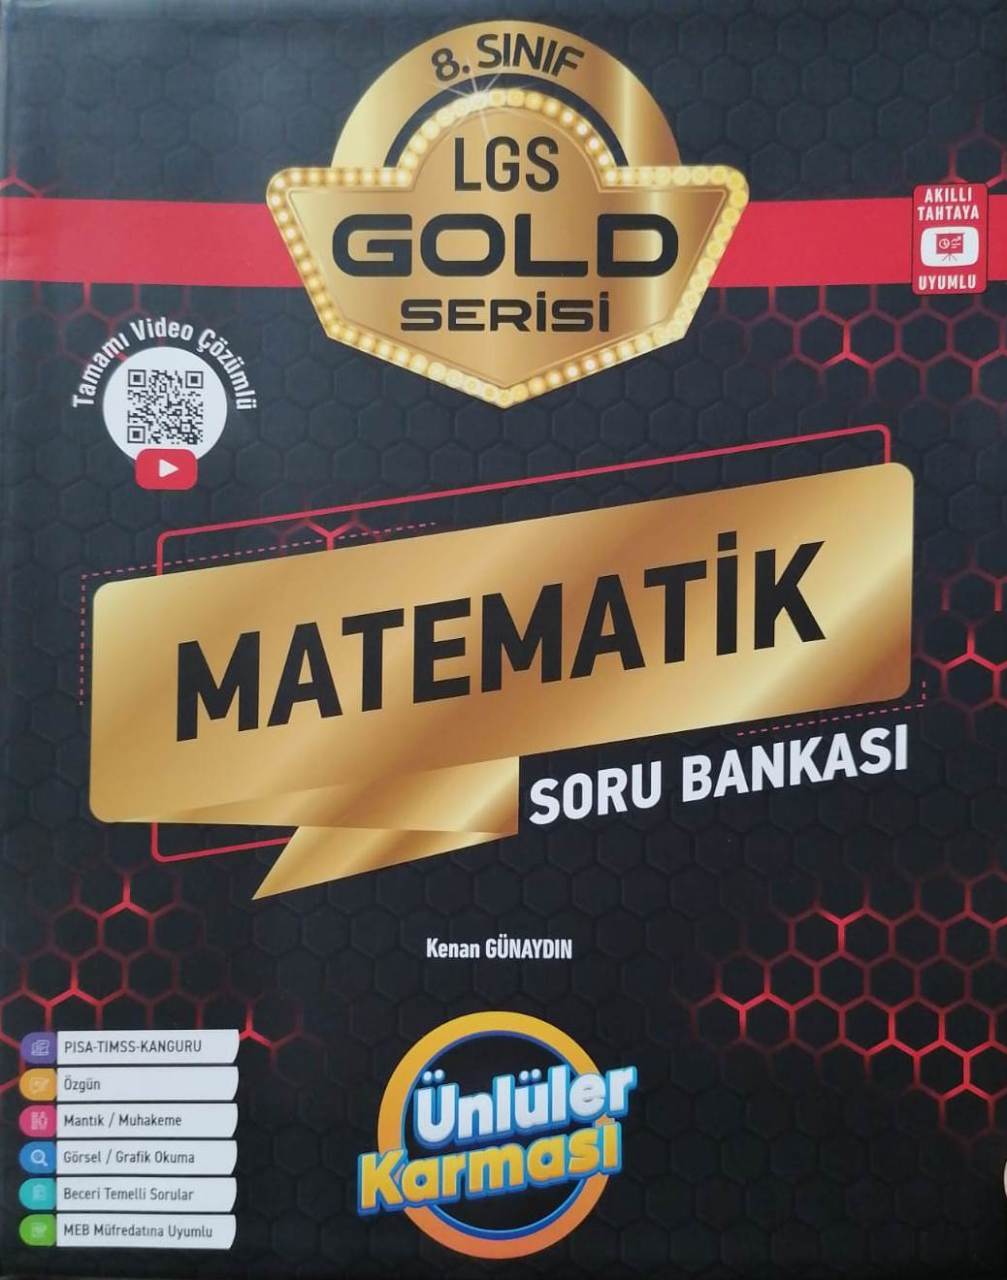 Ünlüler Karması 8.Sınıf LGS Matematik GOLD Serisi Soru Bankası